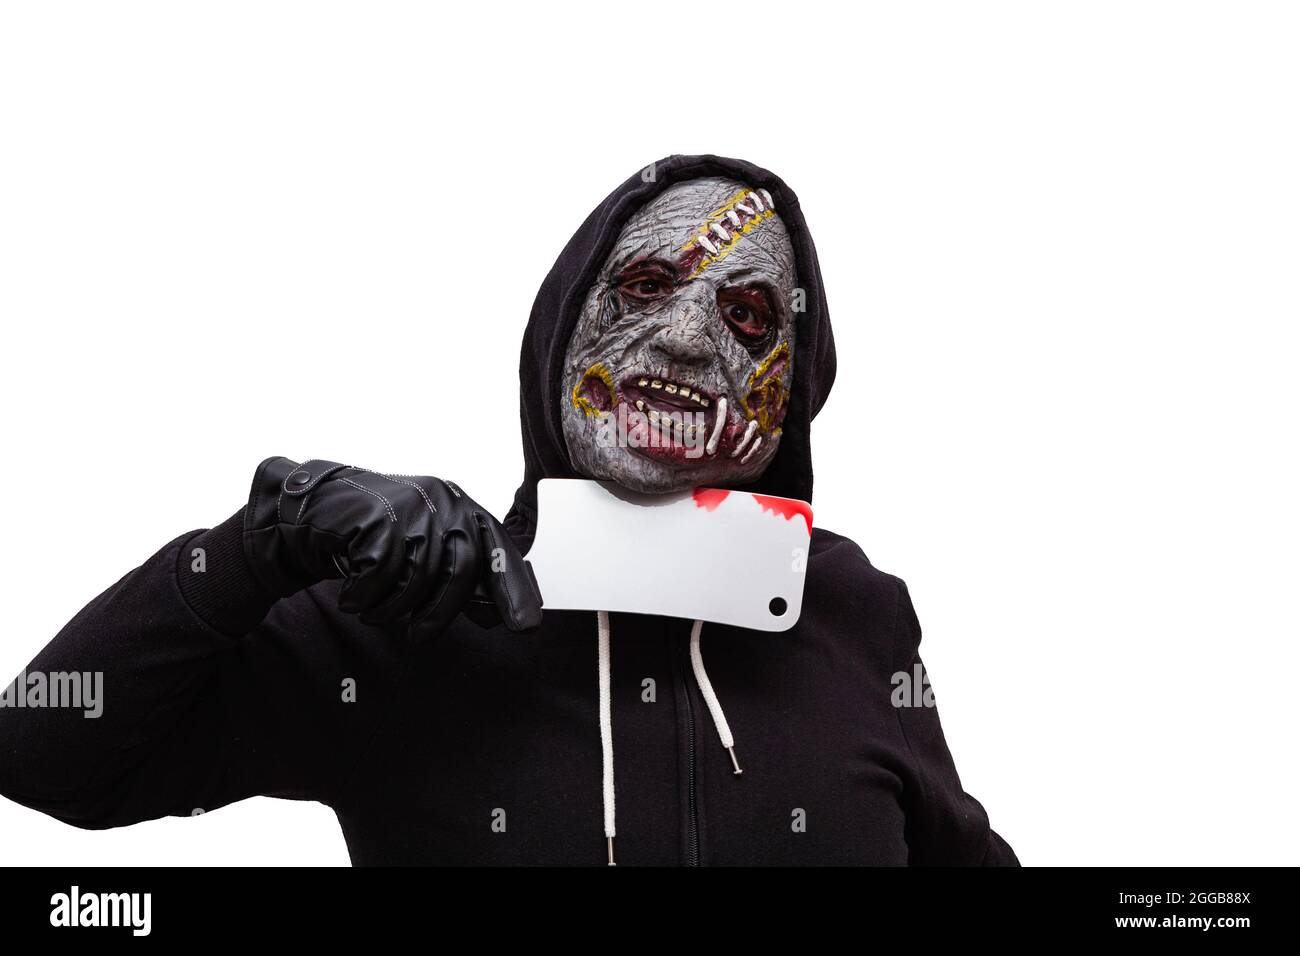 Un hombre vestido en una sudadera con capucha negra y disfrazado en una  máscara zombie tiene un cuchillo de carnicero sangriento presionado contra  su cuello. El fondo es blanco Fotografía de stock -